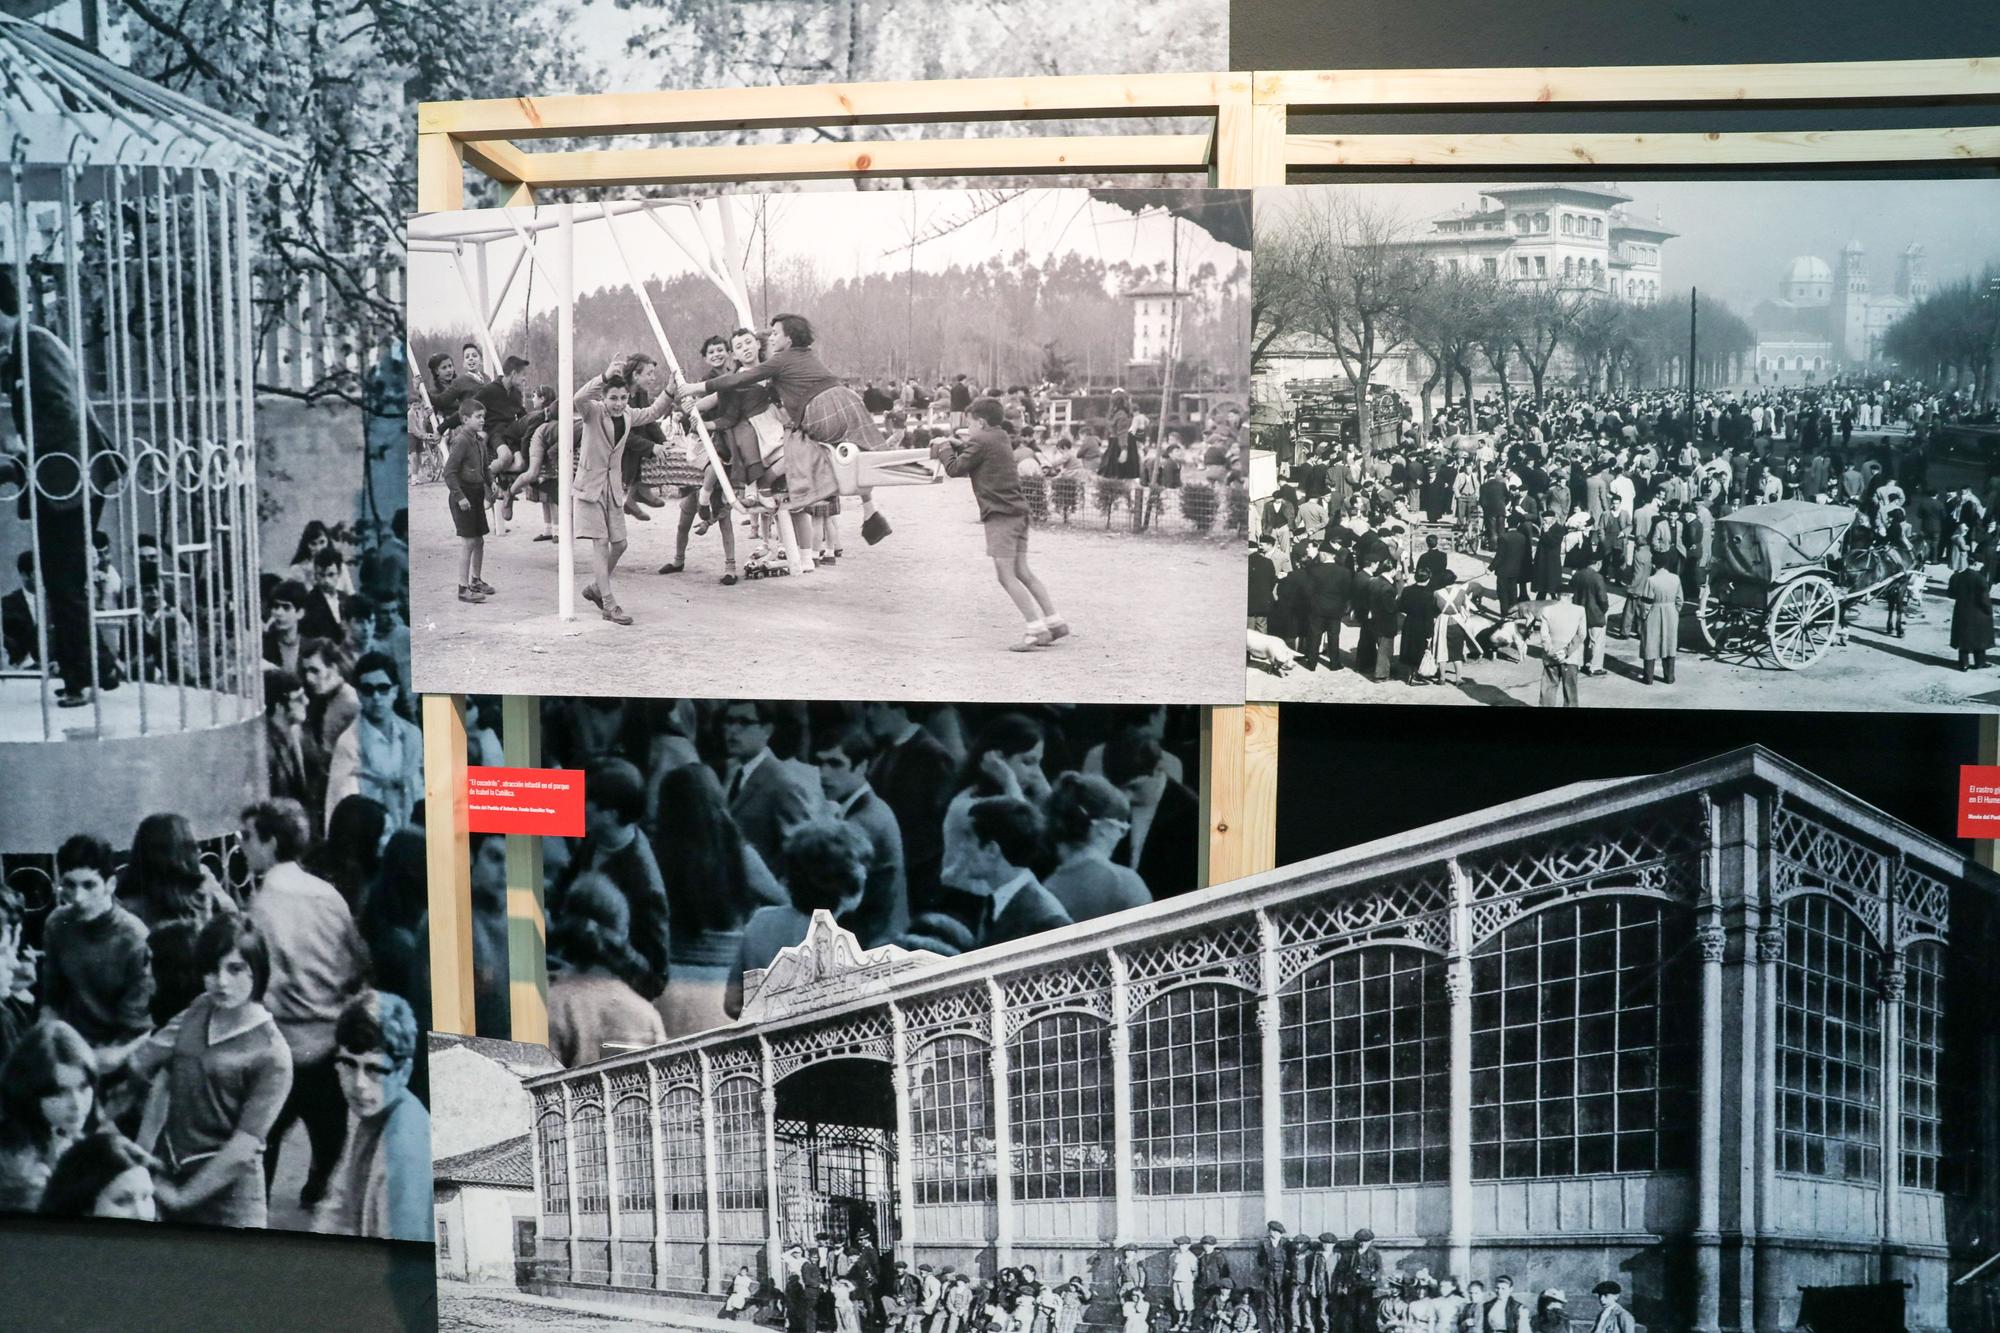 Así es el stand de Gijón en la Feria de Muestras, con imágenes antiguas de la ciudad